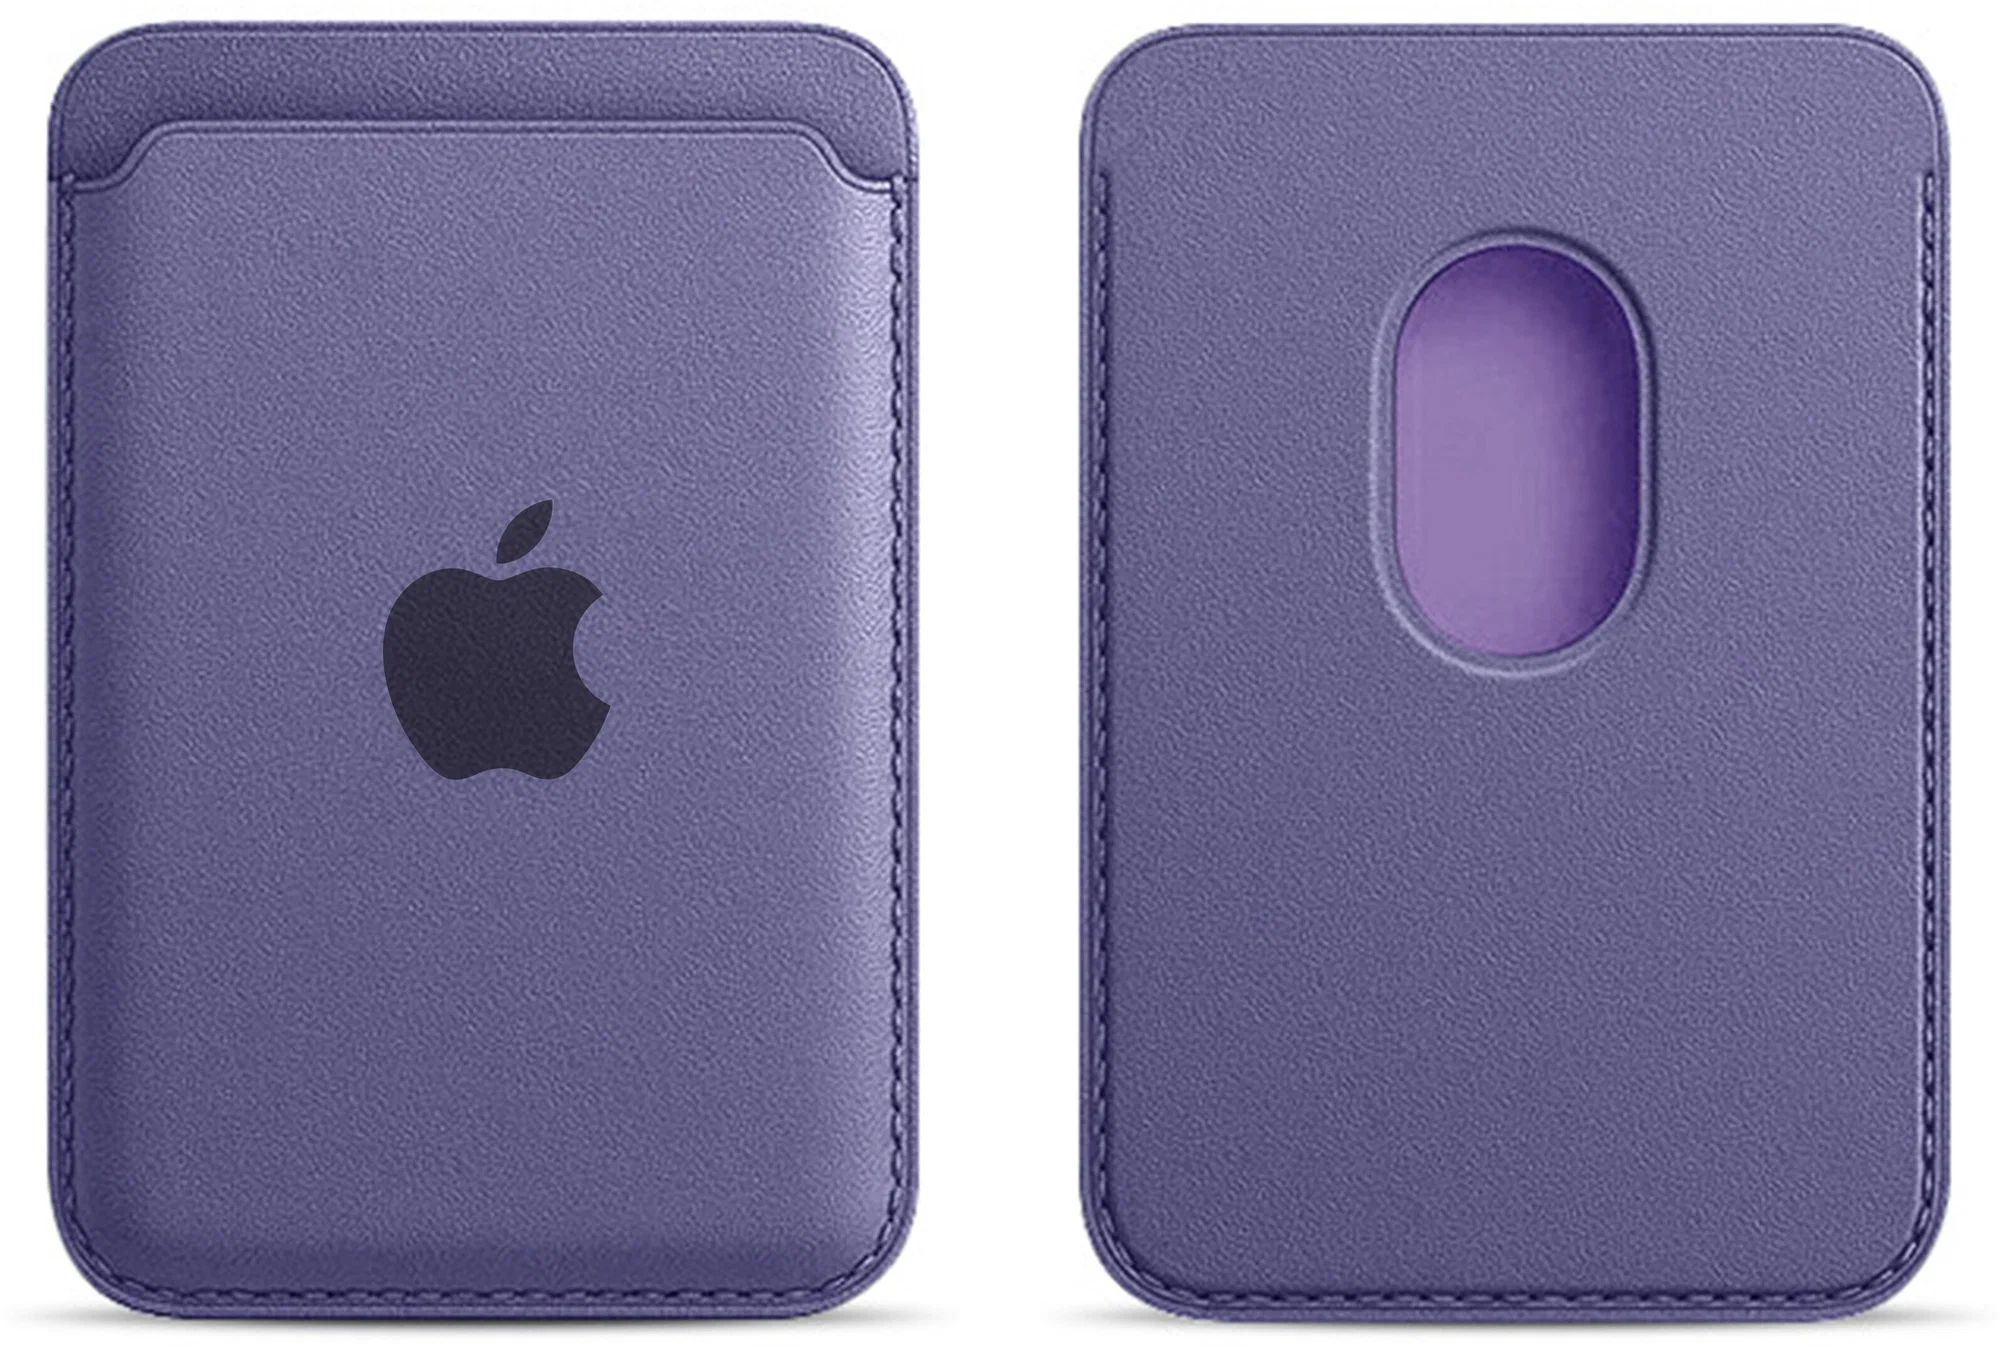 Чехол-бумажник Leather Wallet c MagSafe для iPhone, фиолетовый